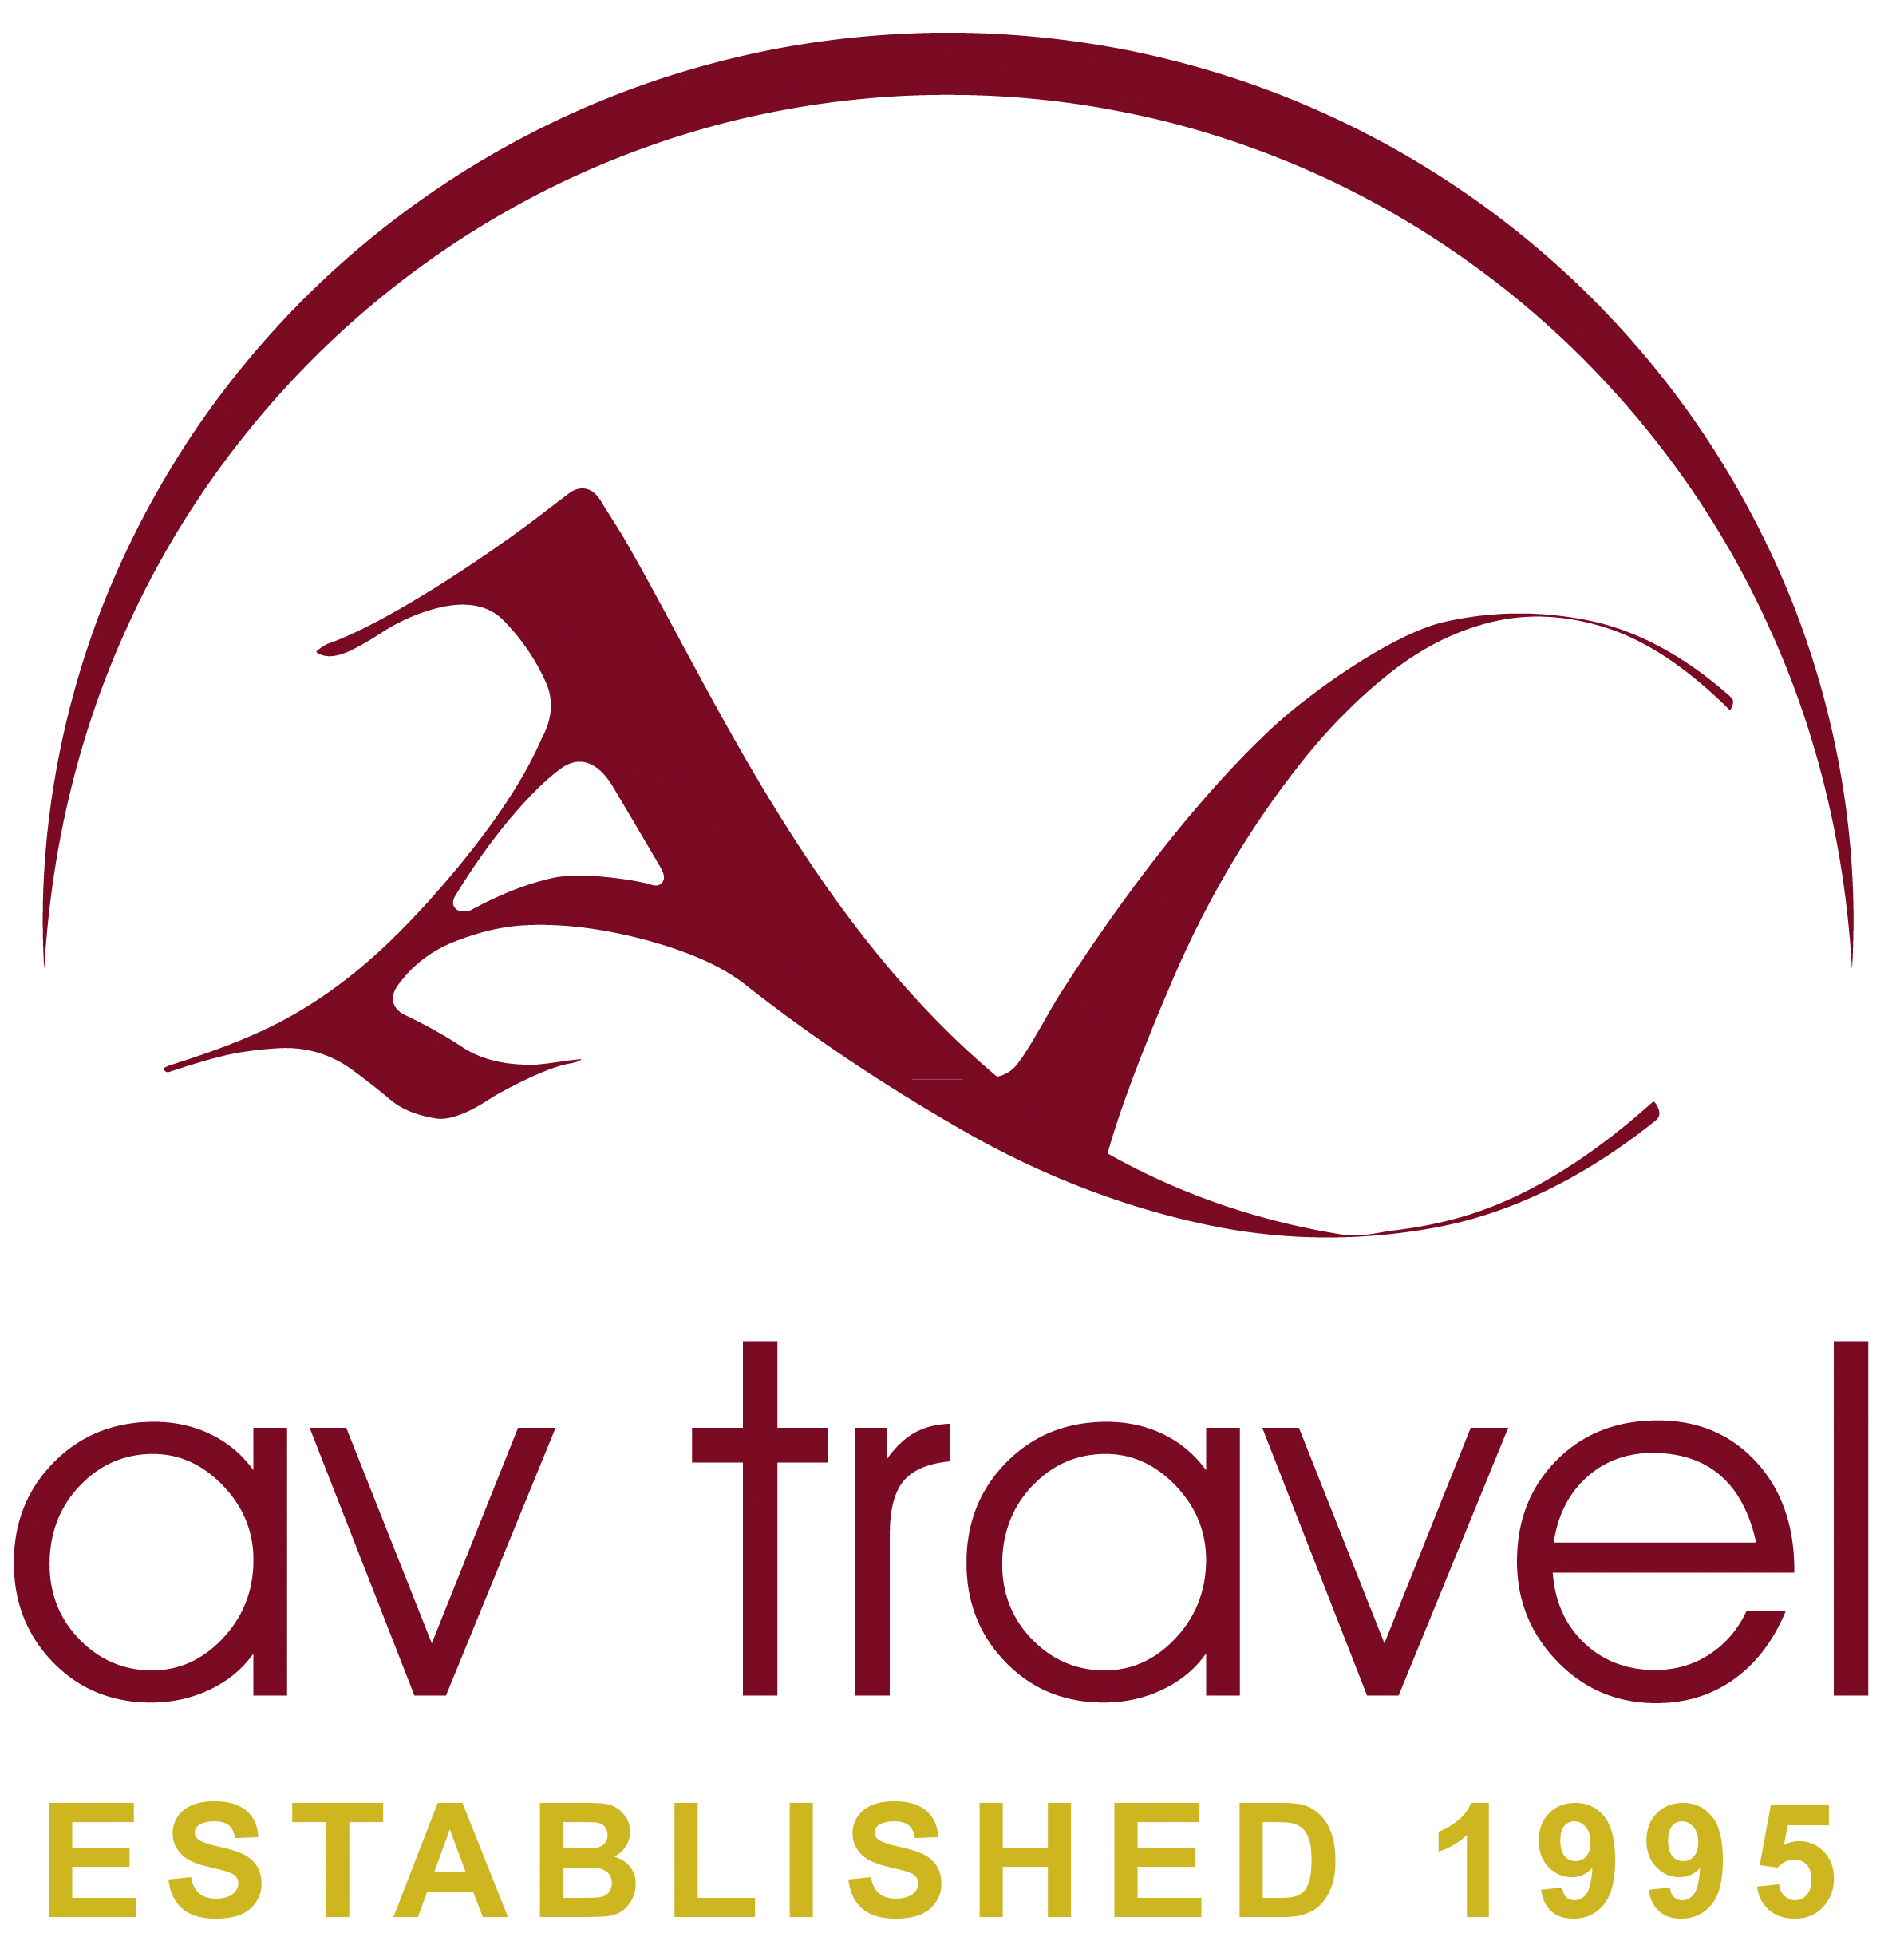 AV Travel